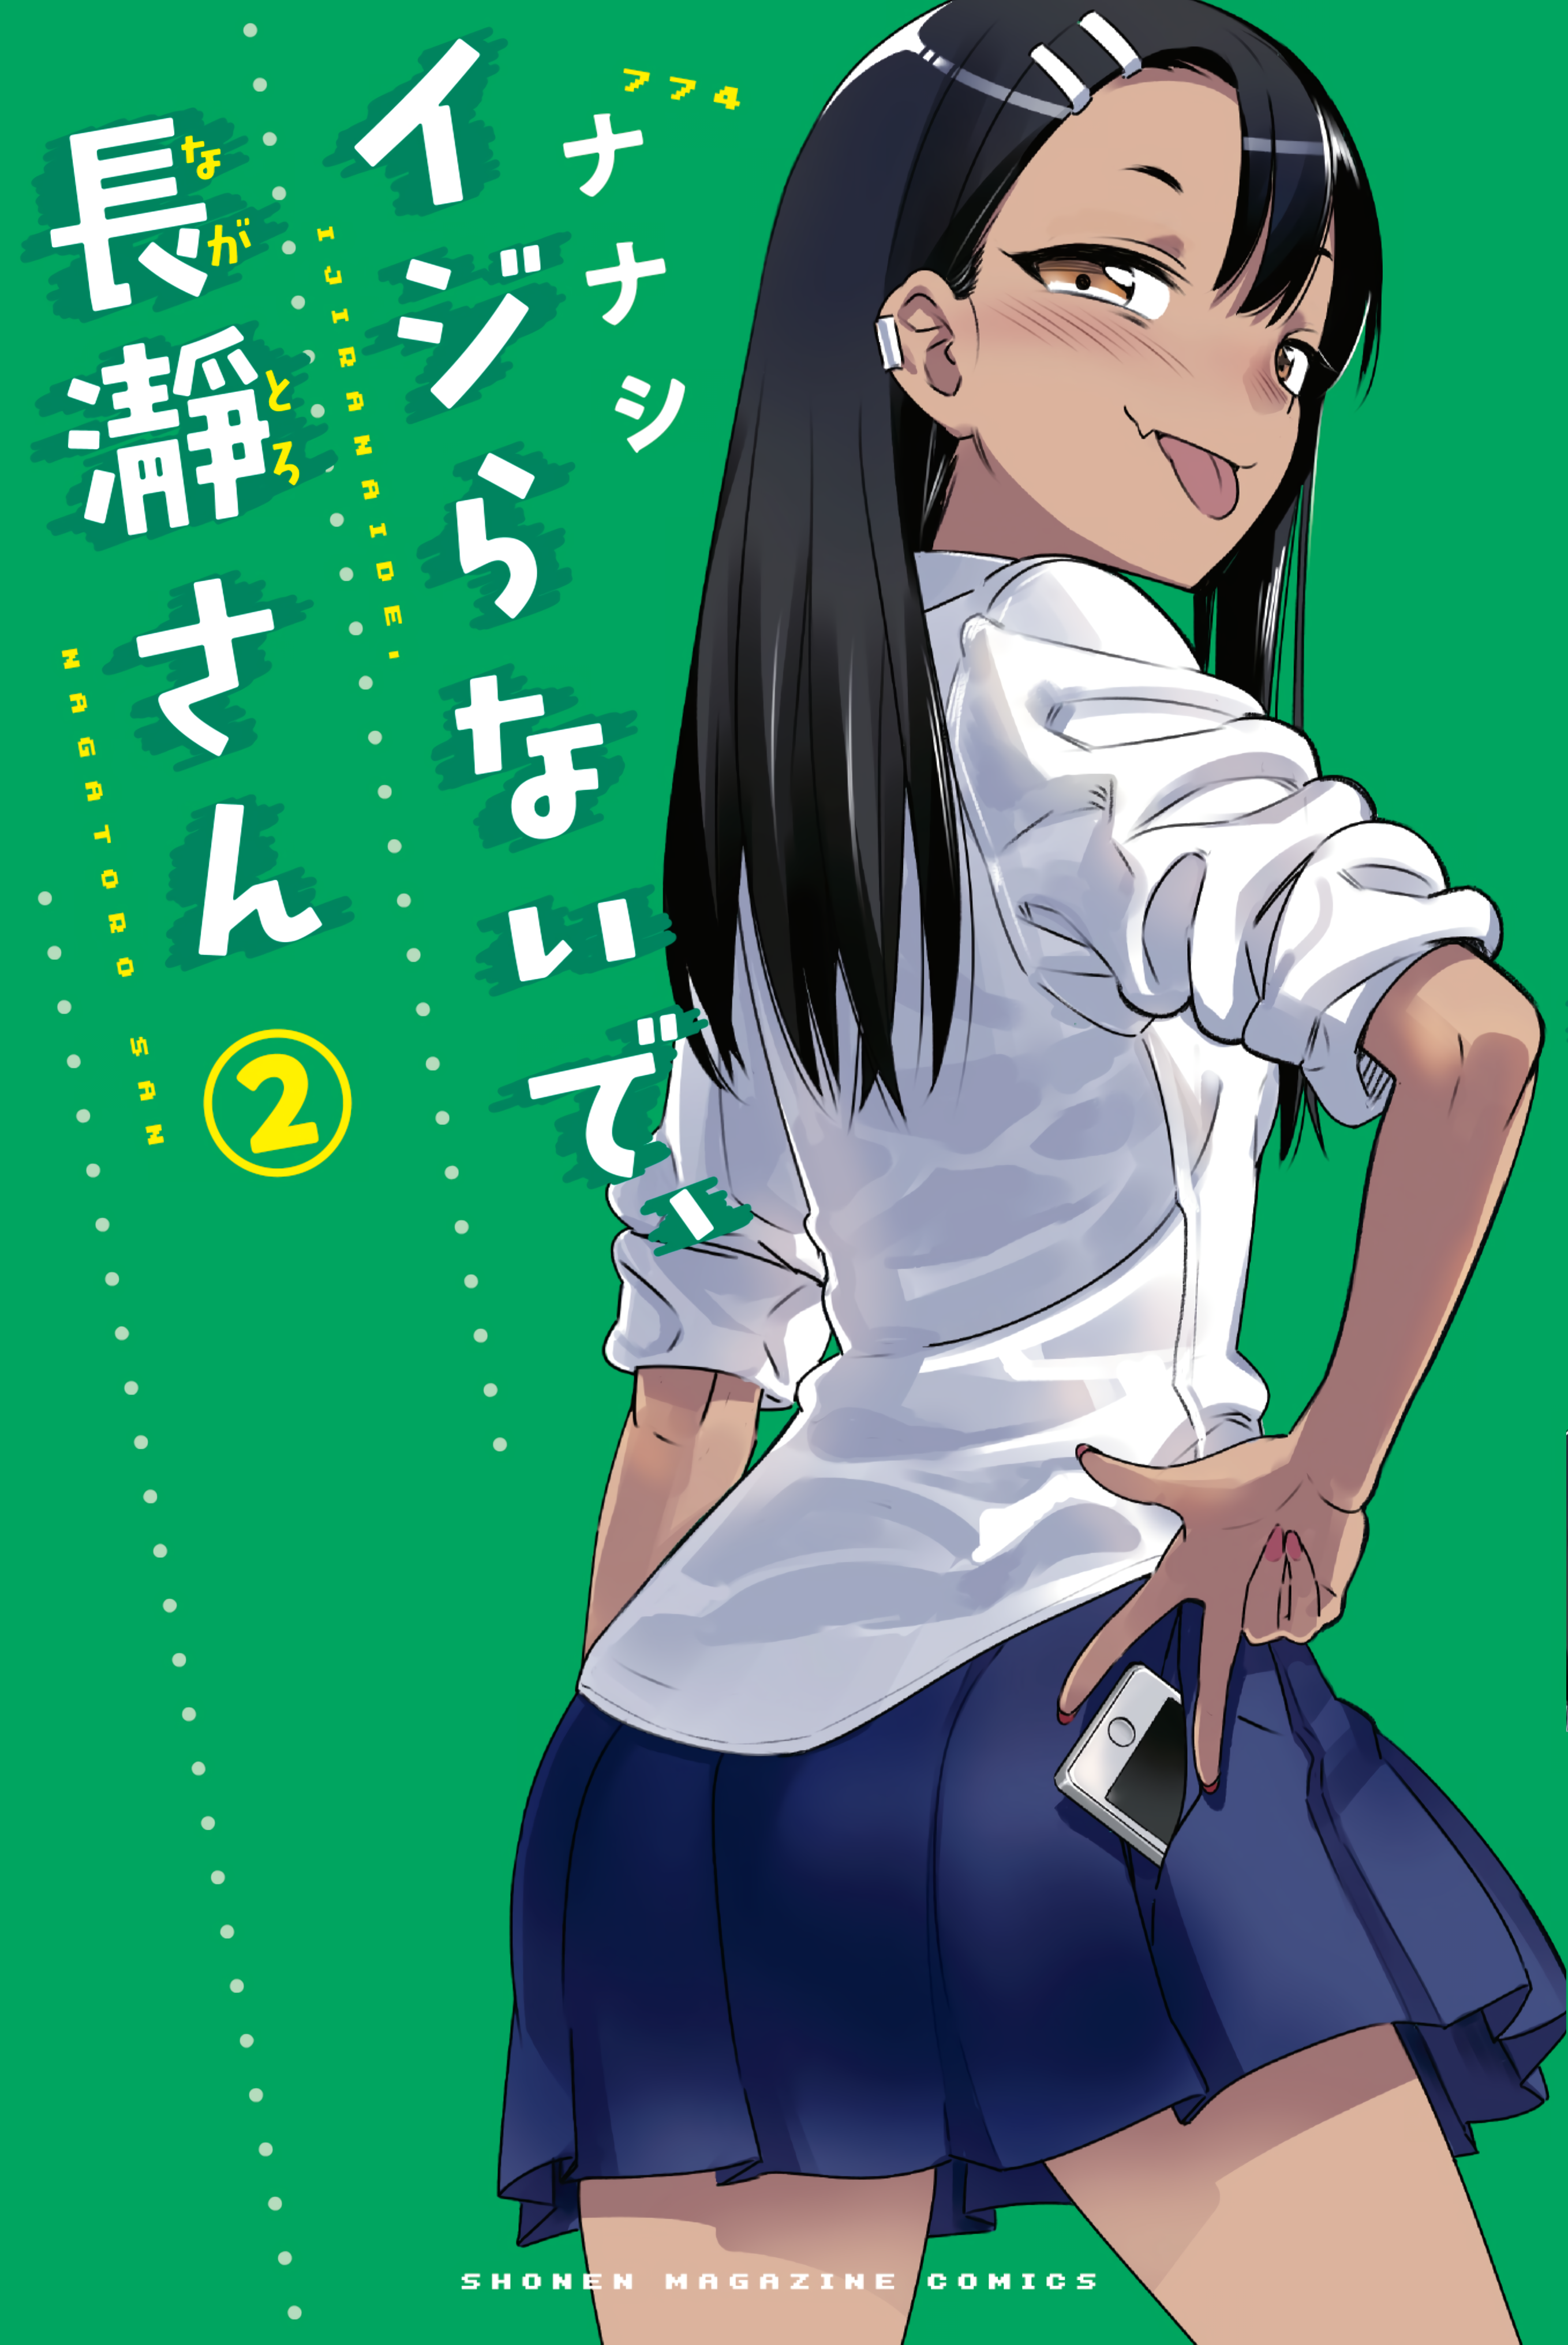 Anime – Ijiranaide Nagatoro San – Nekotoro – Welcome to MegaMouseArts!